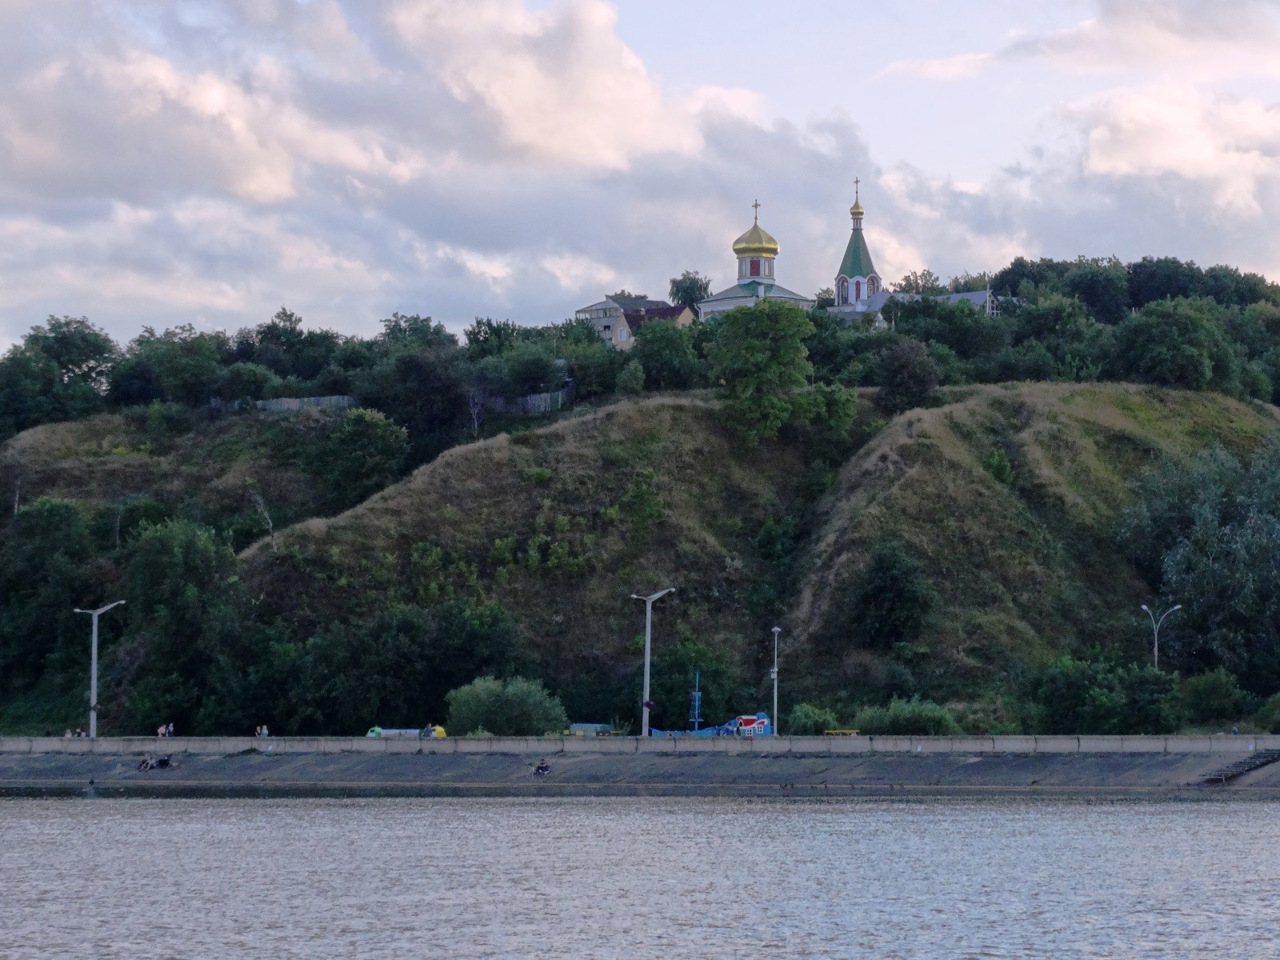 Київська область